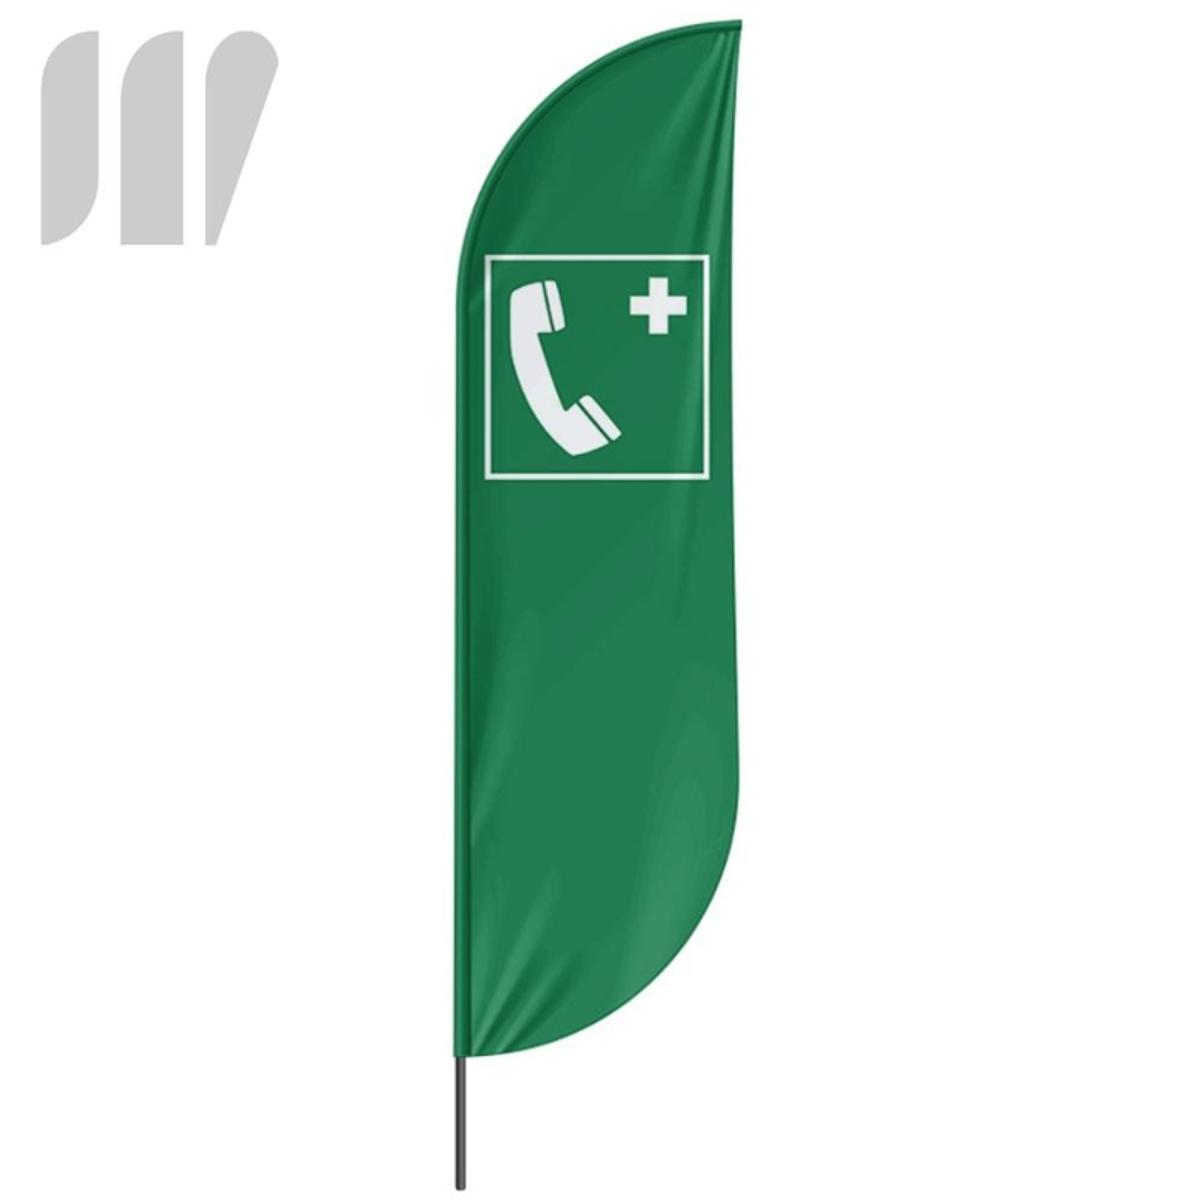 Beachflag Notfalltelefon - 3 Modelle - 4 Größen